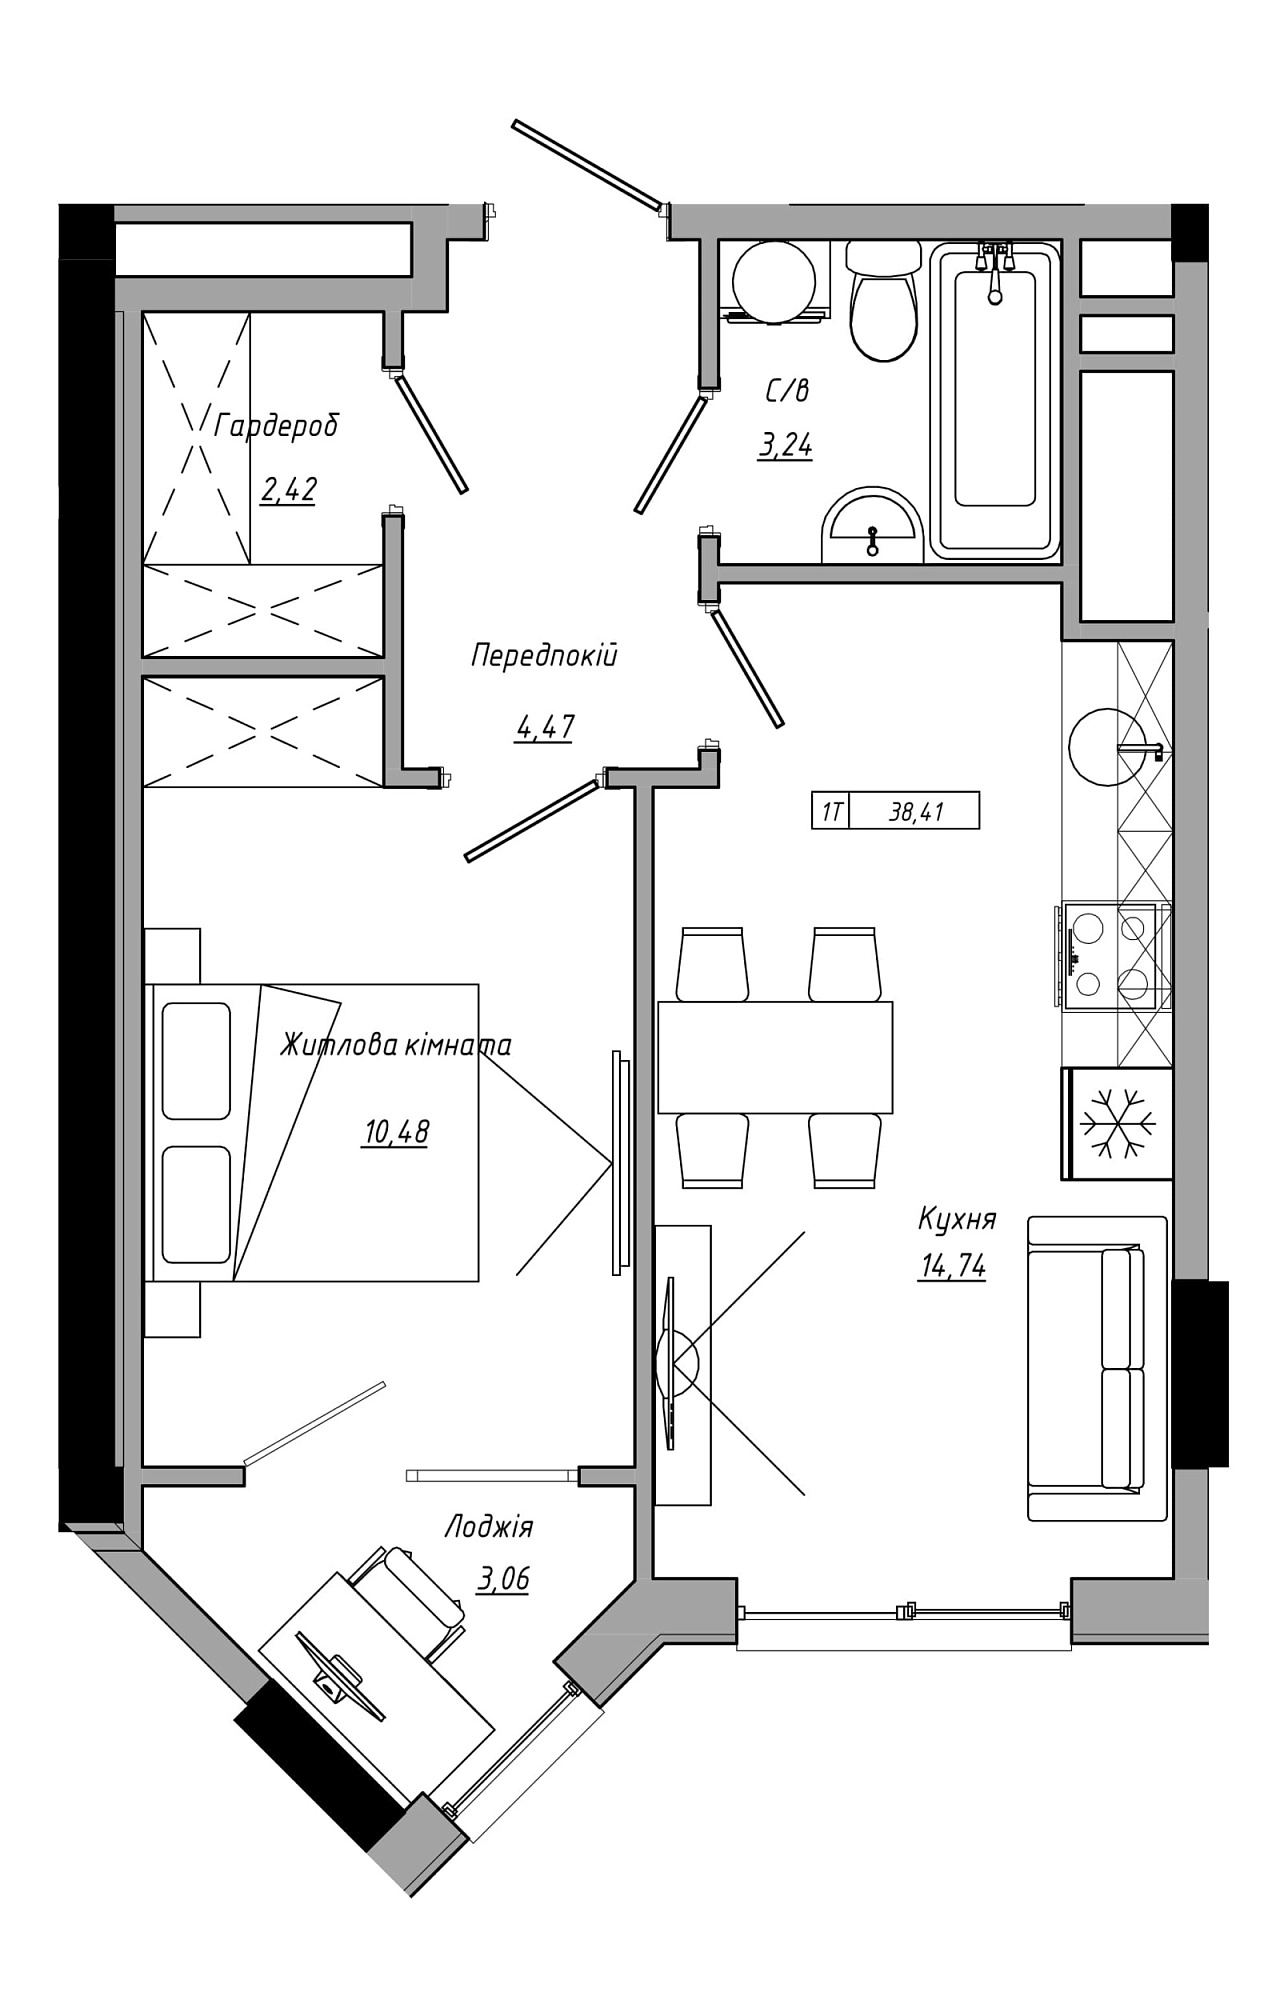 Планування 1-к квартира площею 38.41м2, AB-21-13/00122.